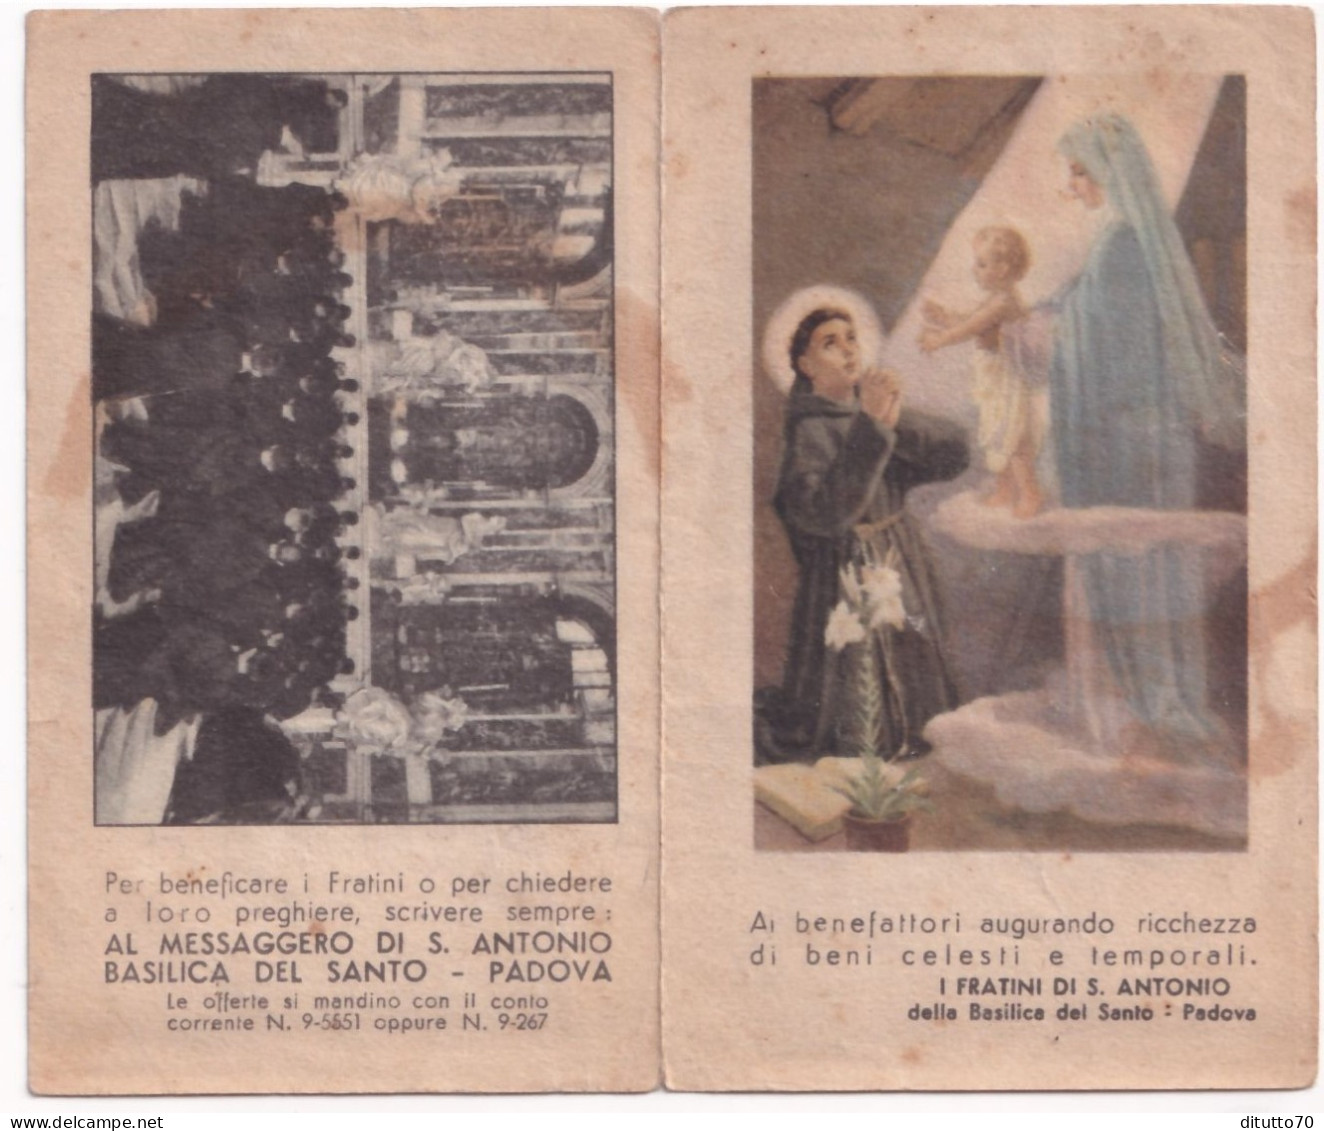 Calendarietto - I Fratini Di S.antonio  Della Basilica Del Santo - Padova - Anno 1947 - Small : 1941-60